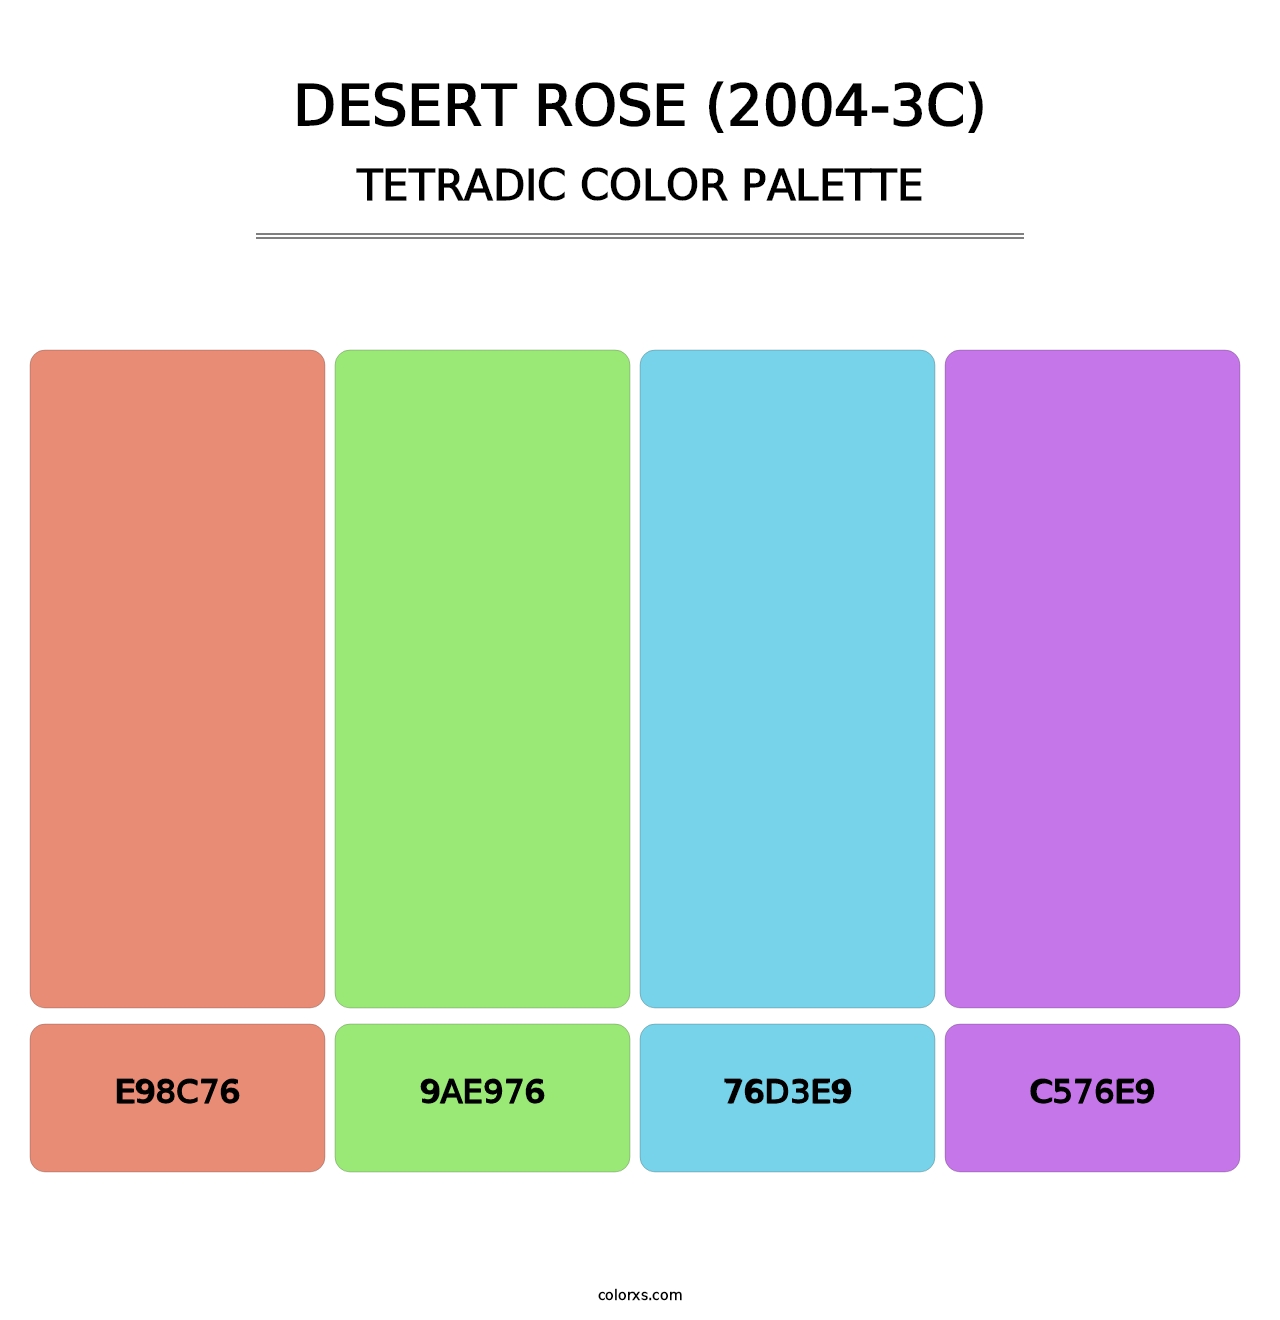 Desert Rose (2004-3C) - Tetradic Color Palette